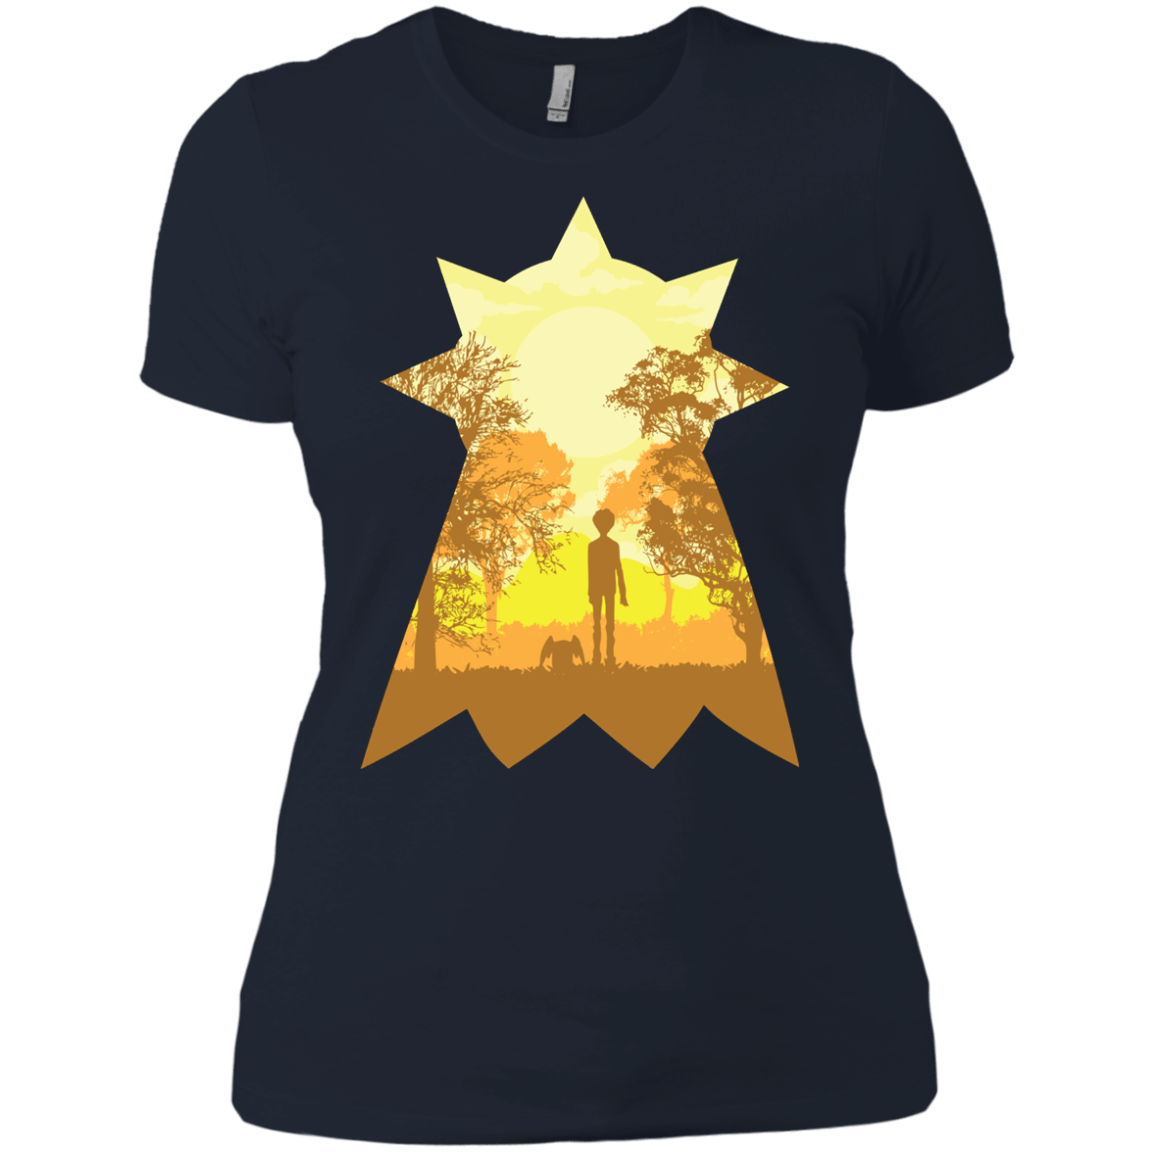 T-Shirts Midnight Navy / X-Small Hope Women's Premium T-Shirt